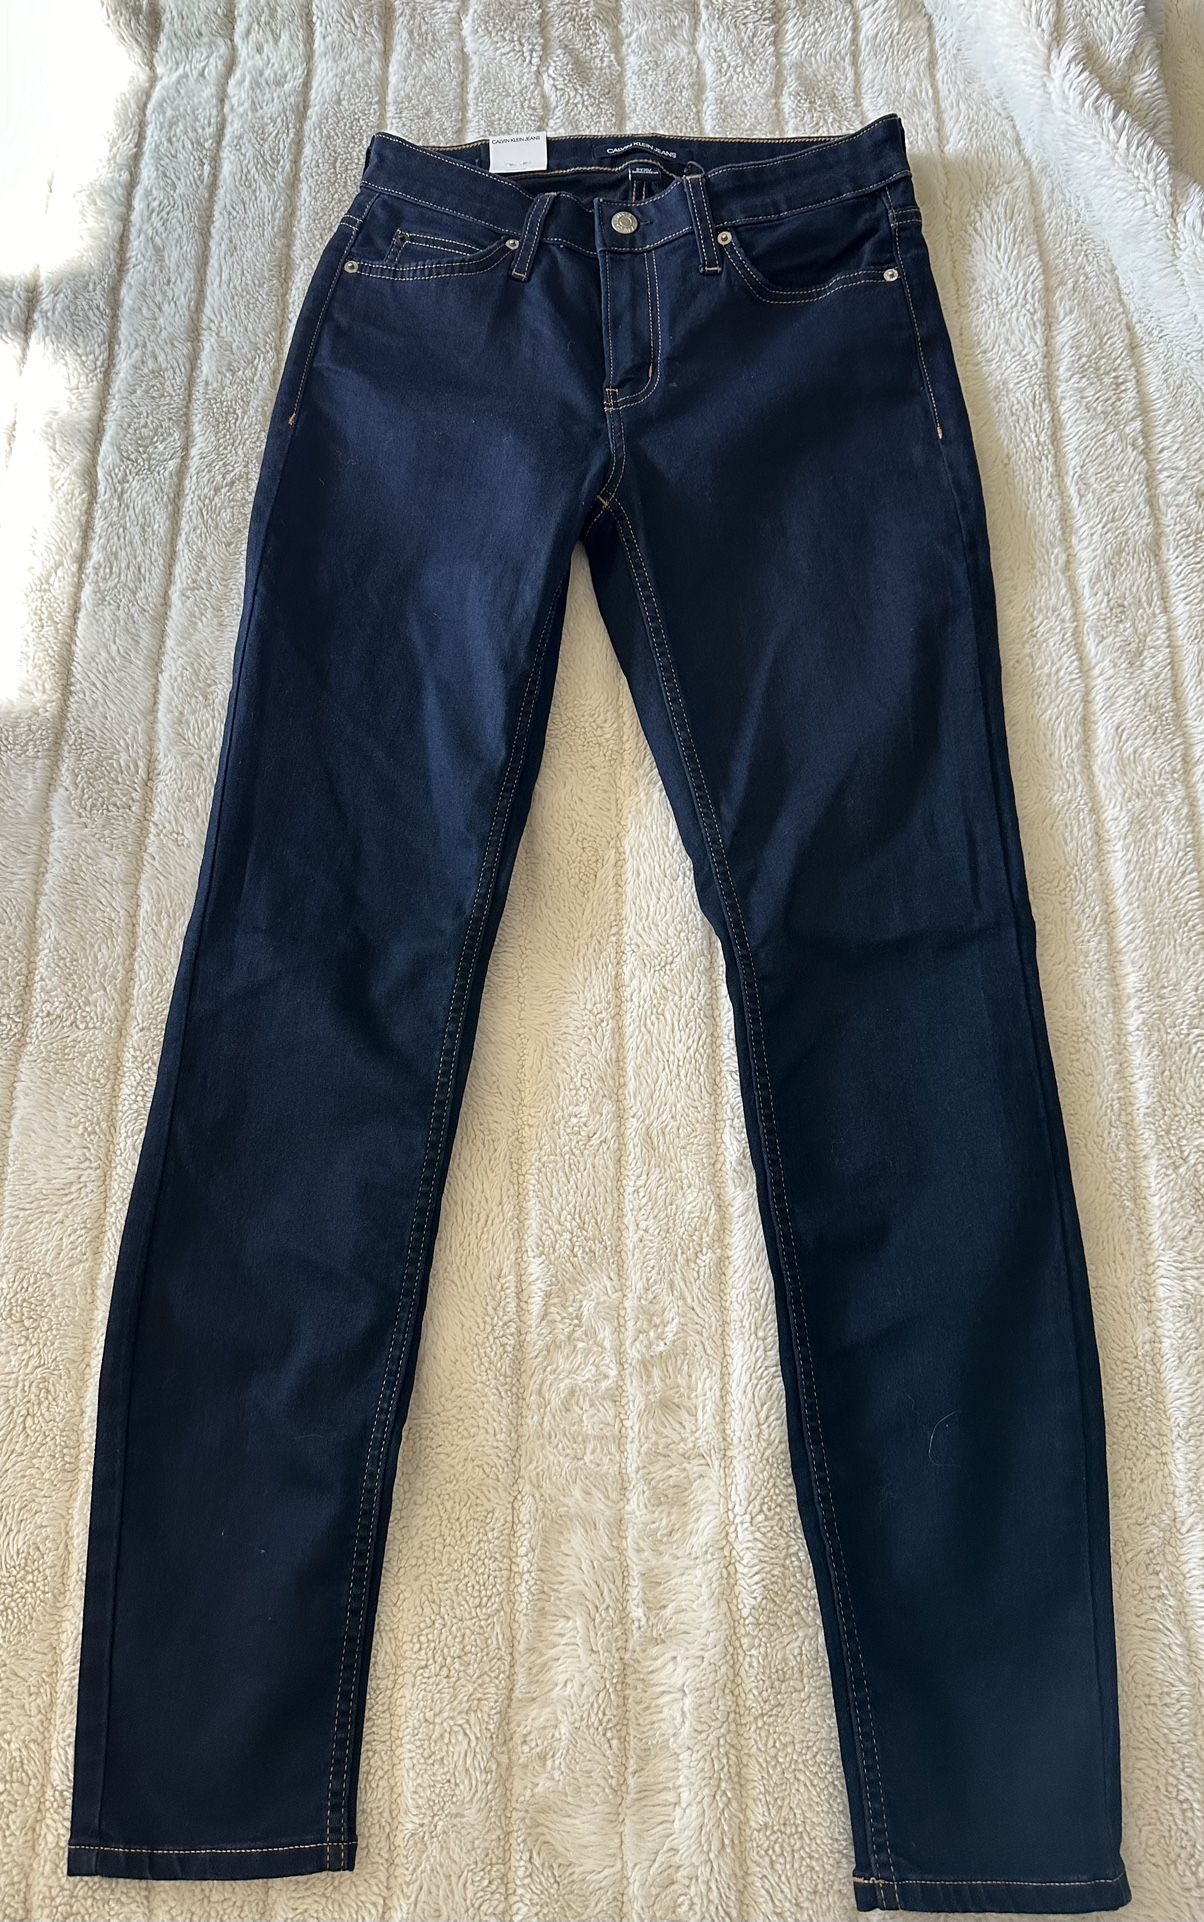 Calvin Klein Jeans $10 